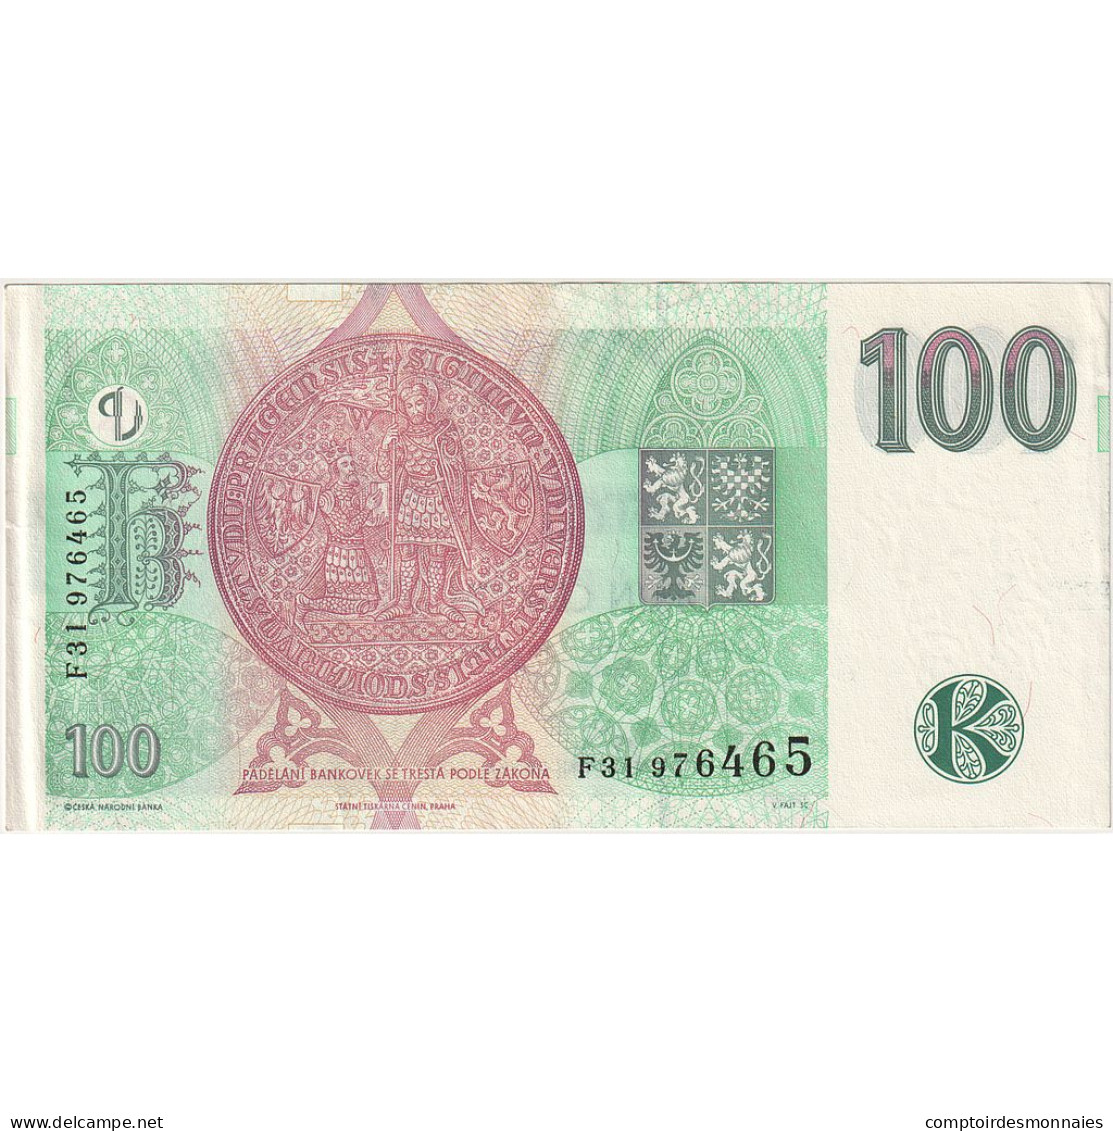 République Tchèque, 100 Korun, 1997, KM:18, NEUF - Checoslovaquia